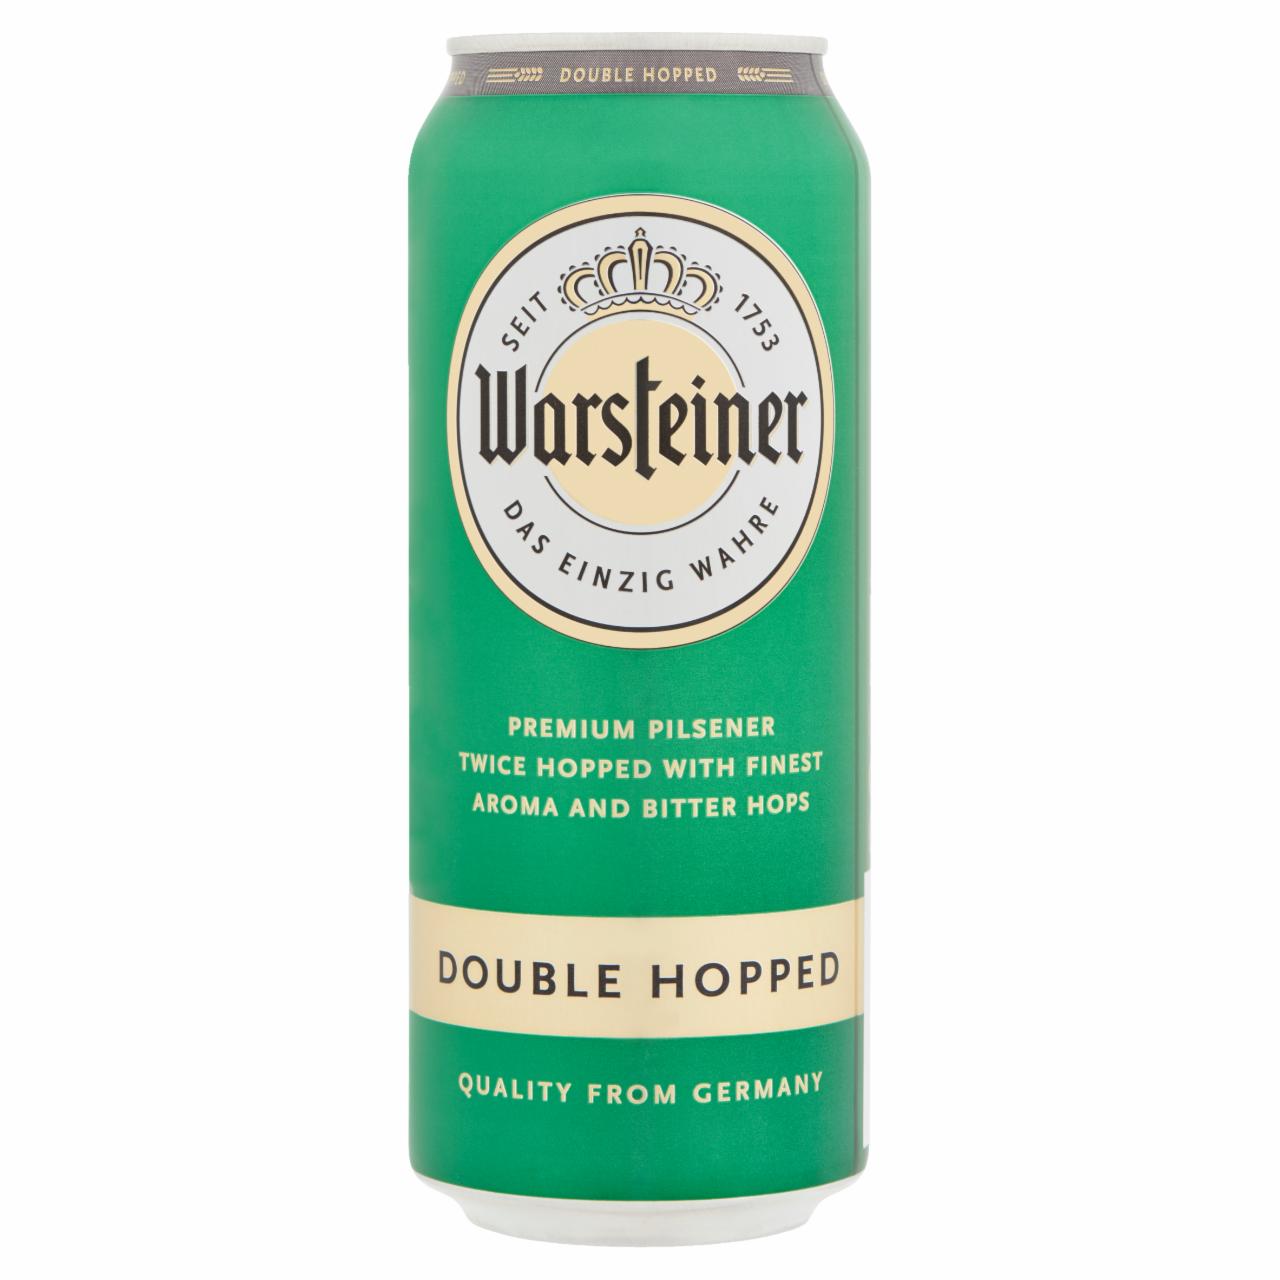 Képek - Warsteiner német világos dupla komlós pils típusú sör 4,8% 0,5 l